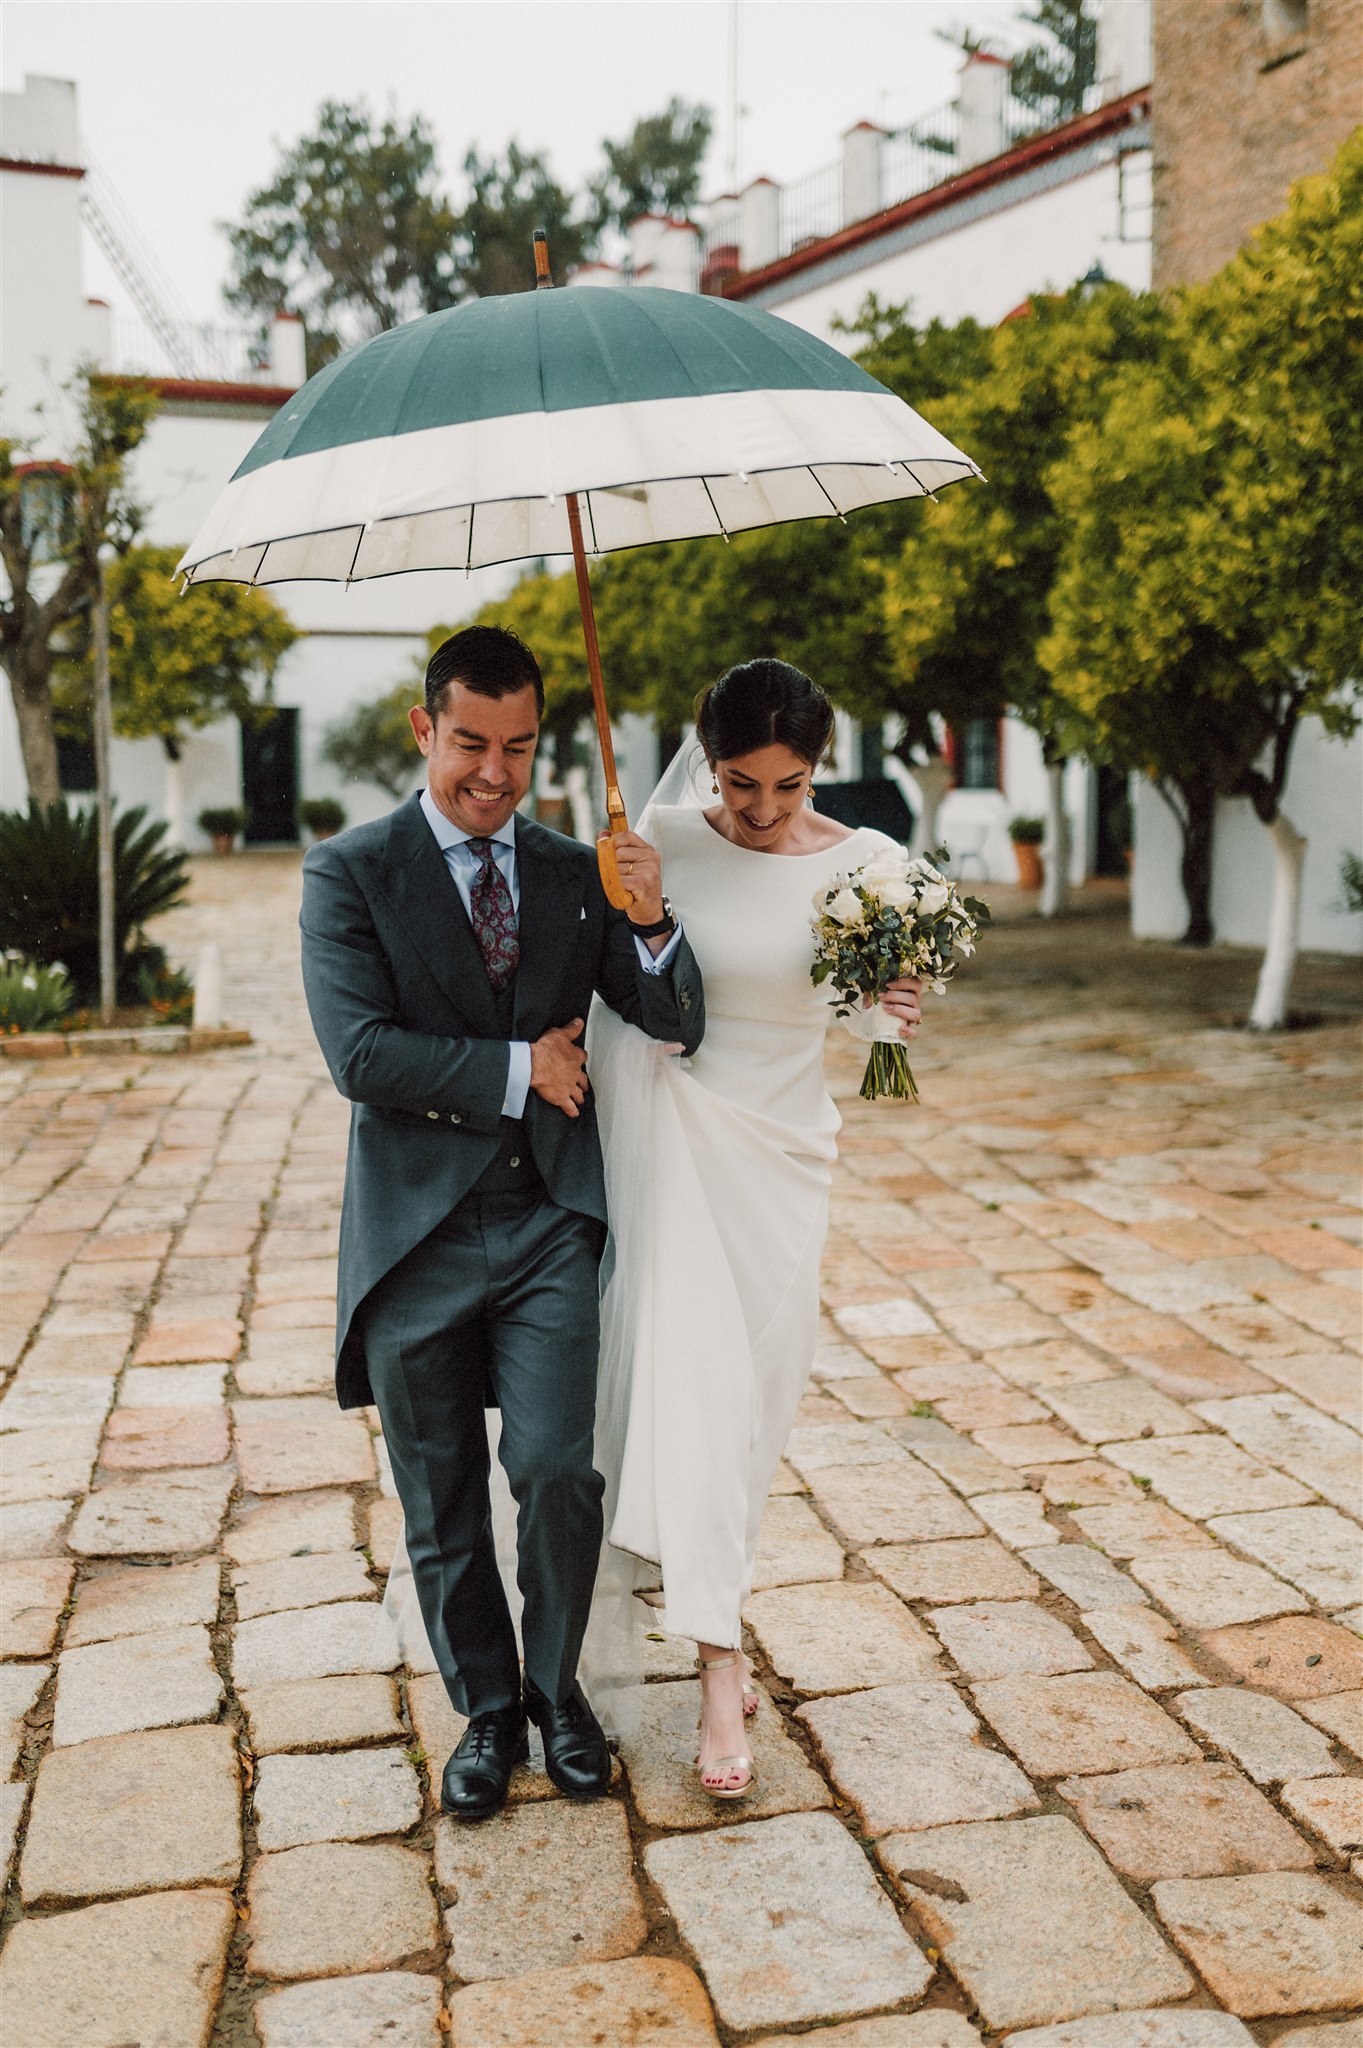 Pareja de novios con paraguas en una boda con lluvia en Sevilla